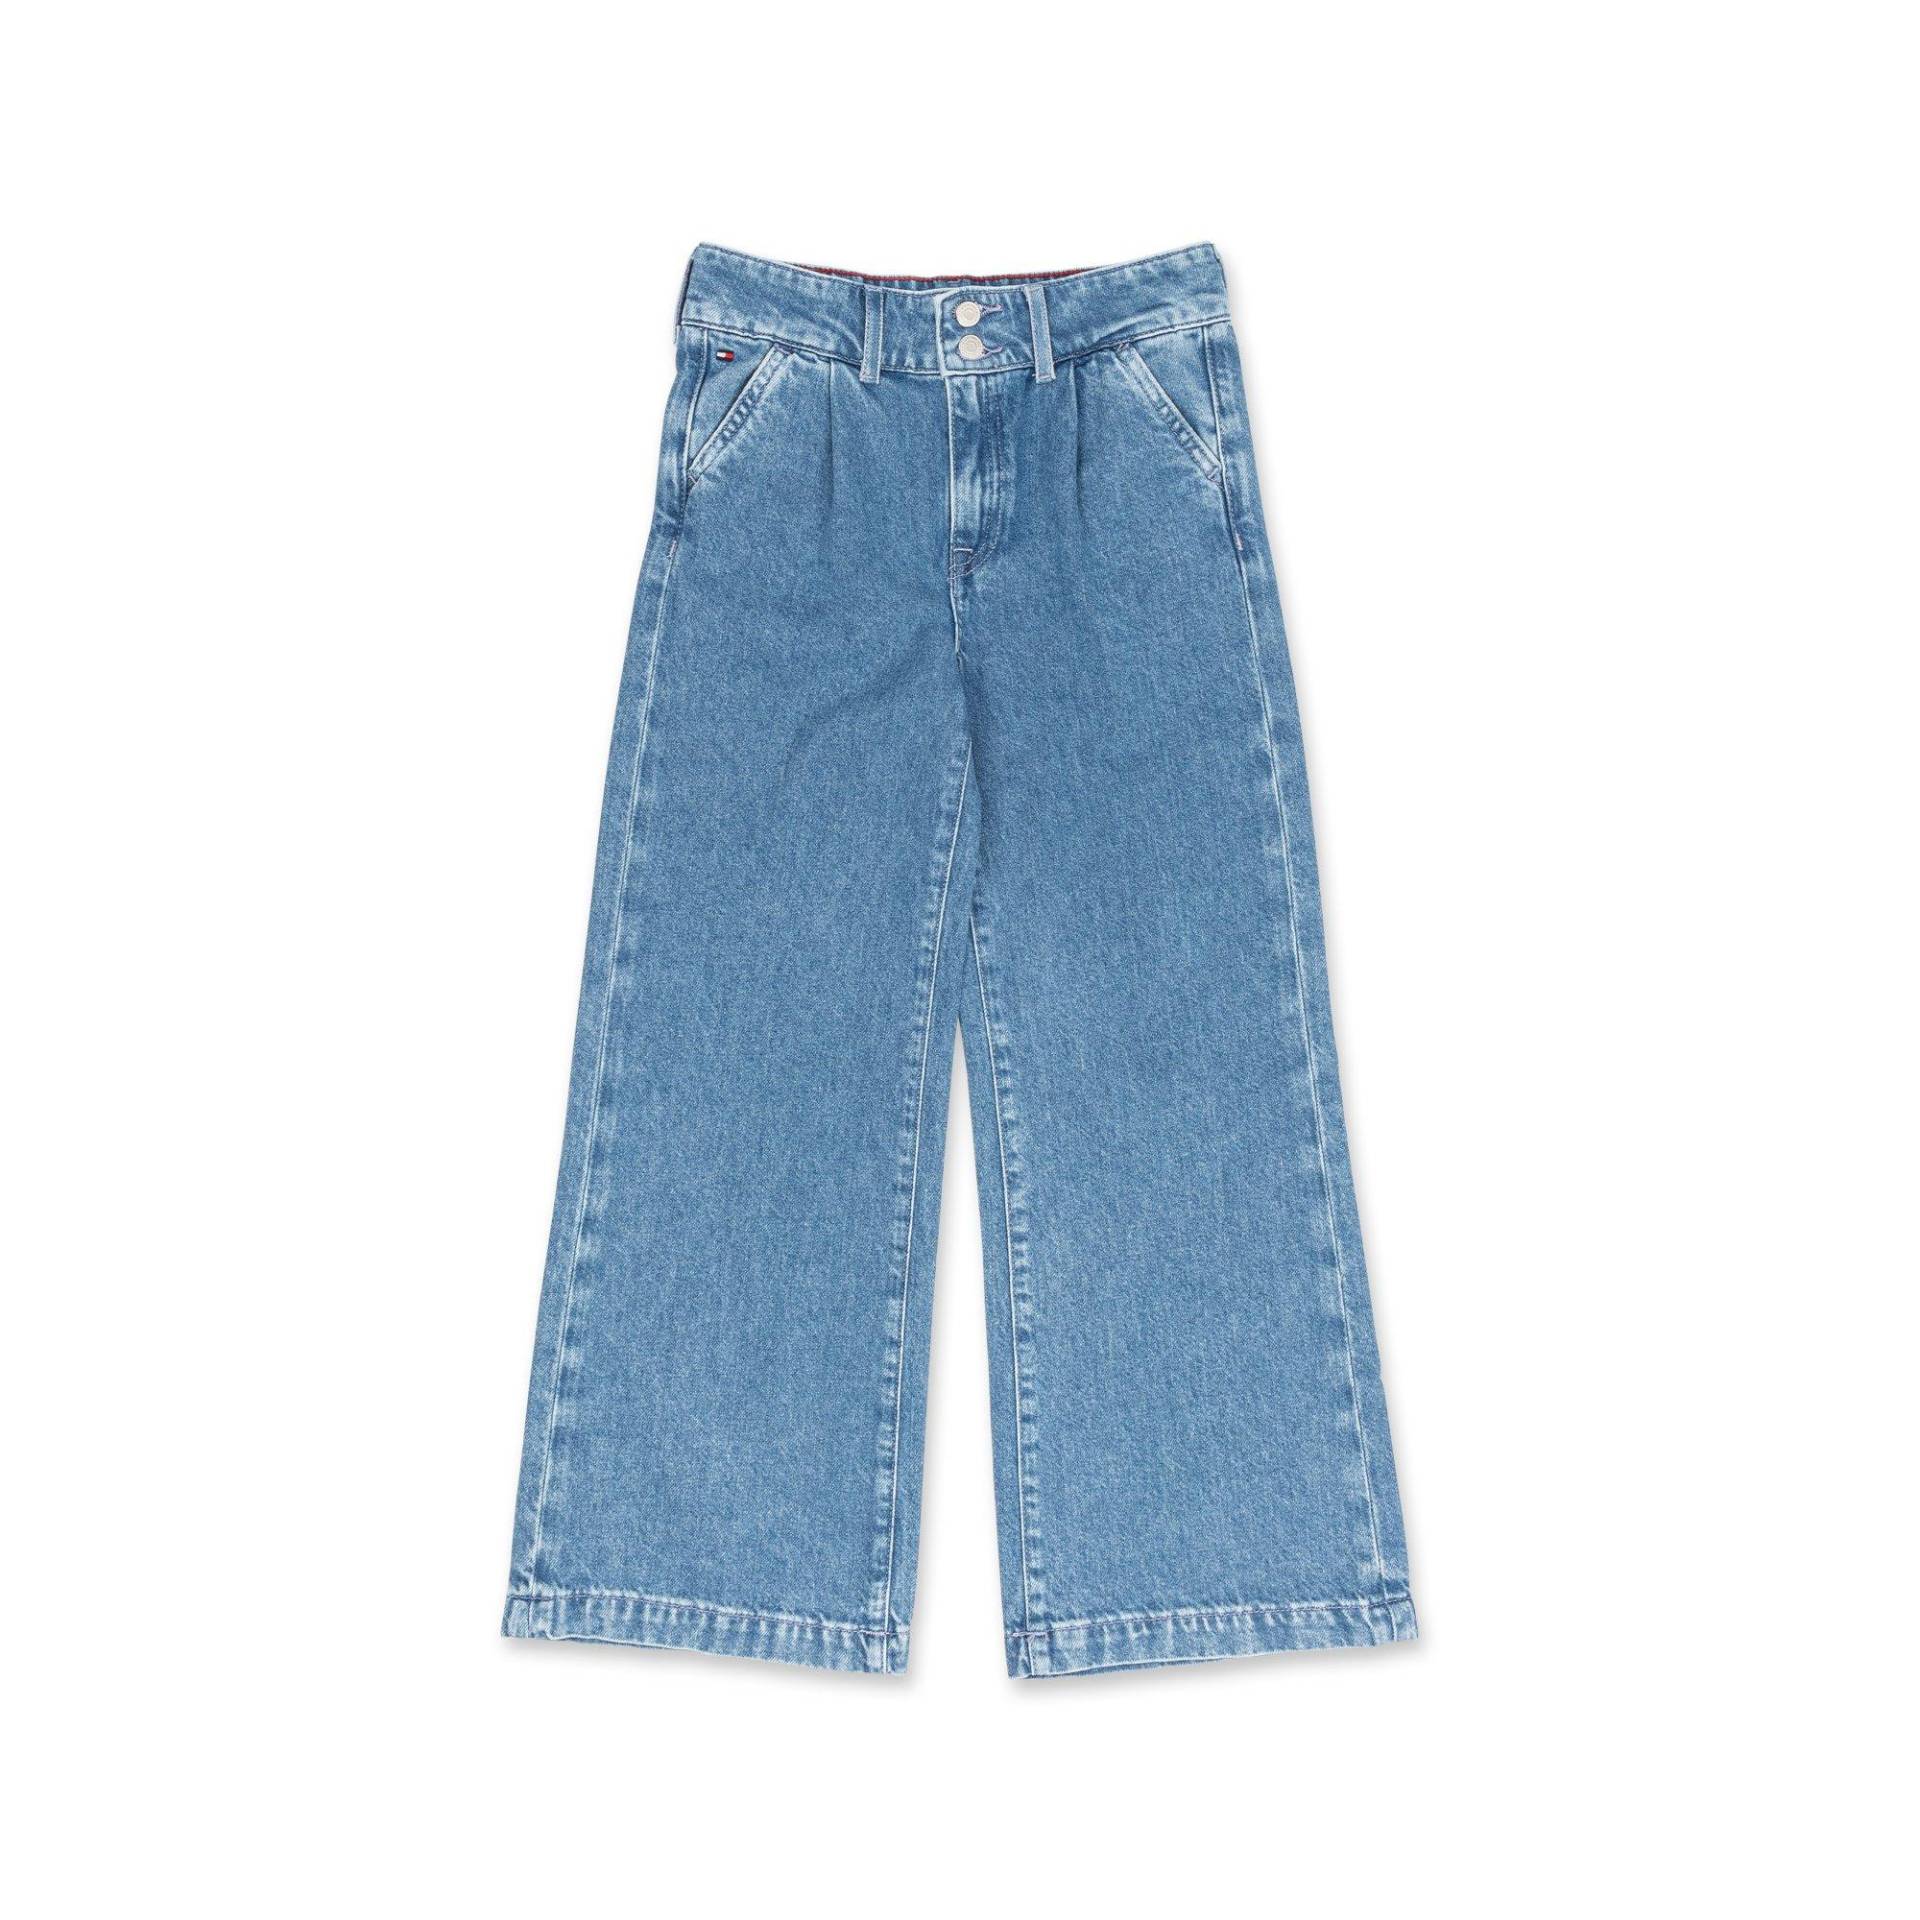 Jeans, Bootcut Fit Mädchen Blau Denim 6A von TOMMY HILFIGER